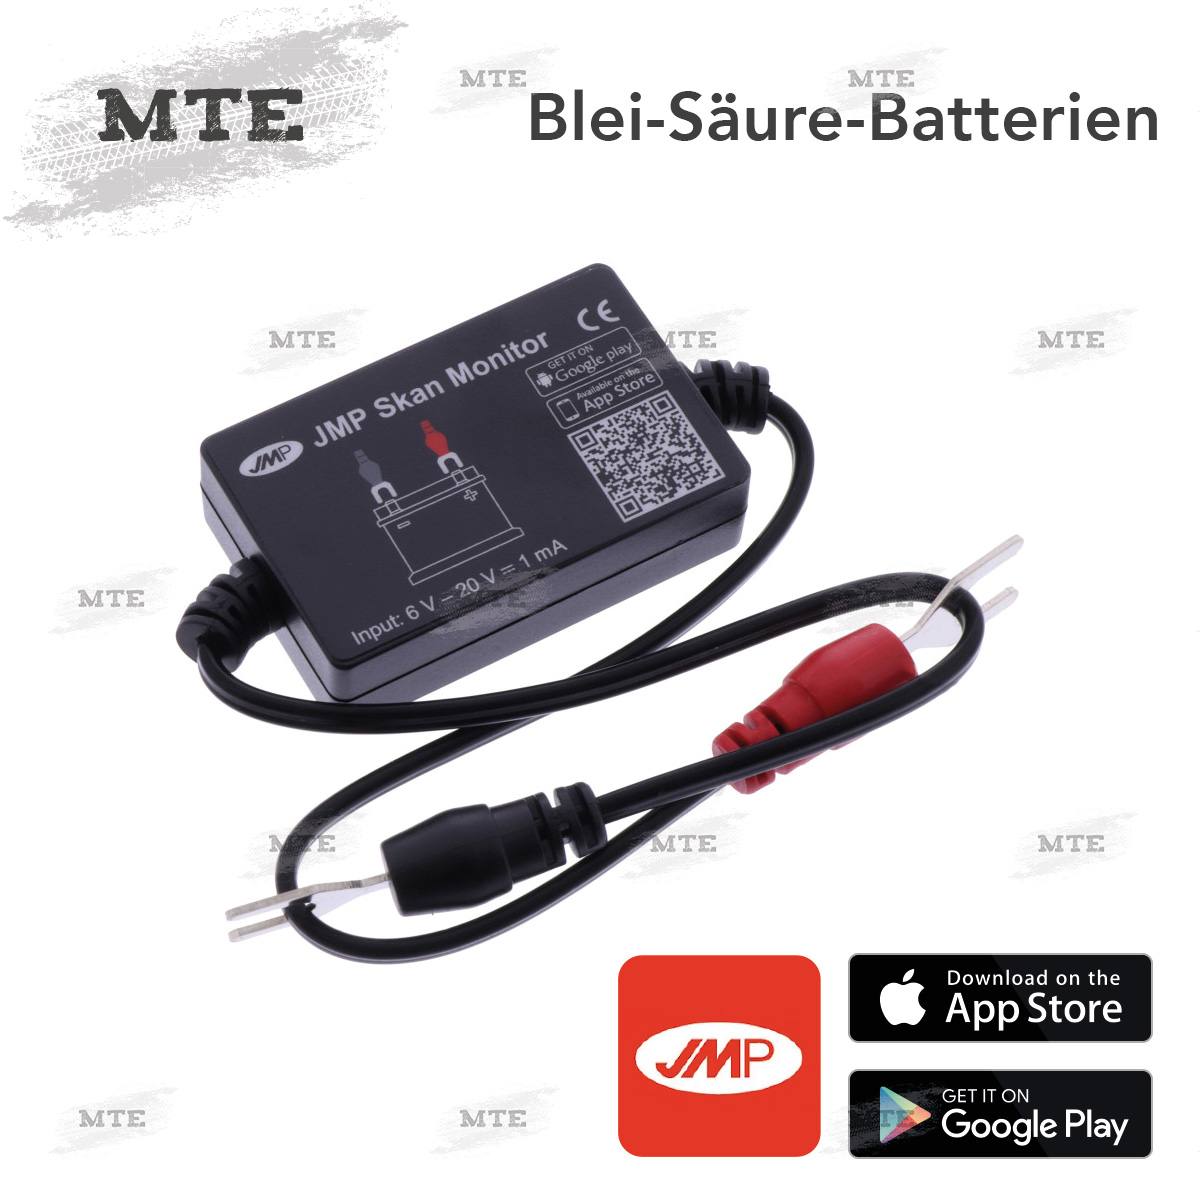 JMP Batterie Monitor mit Bluetooth für Smartphone mit App